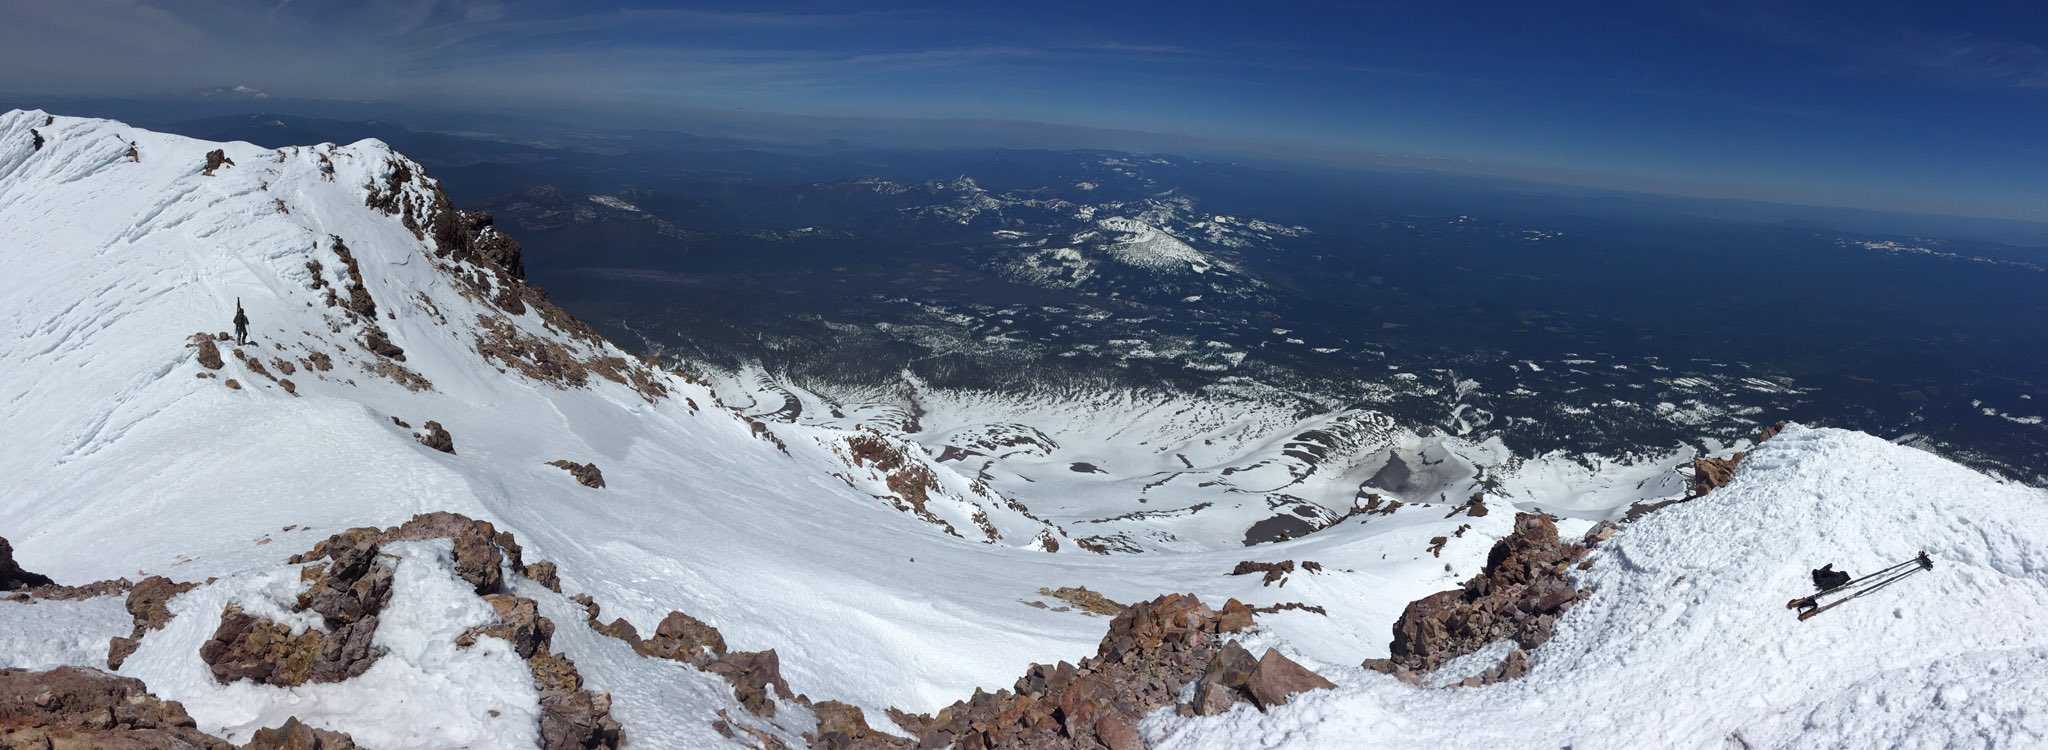 mount shasta peak